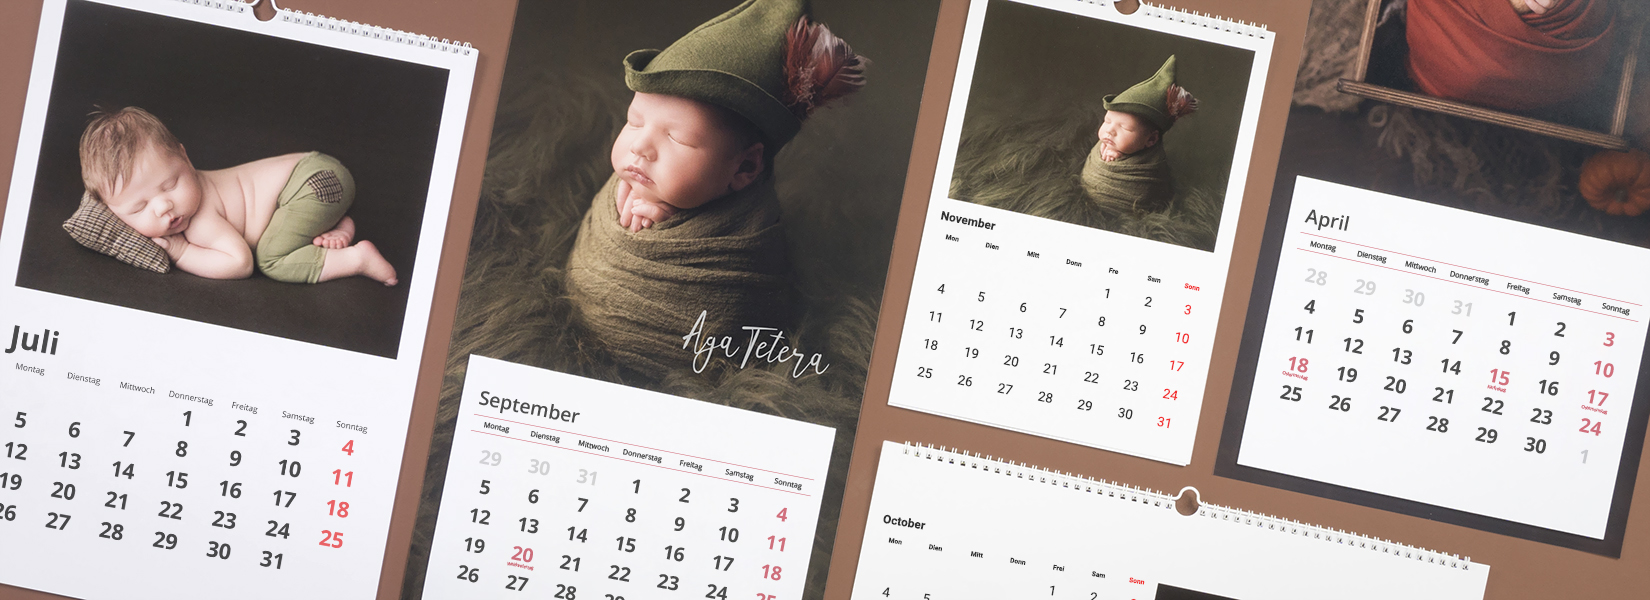 Verschiedene Fotokalender für professionelle Fotografen